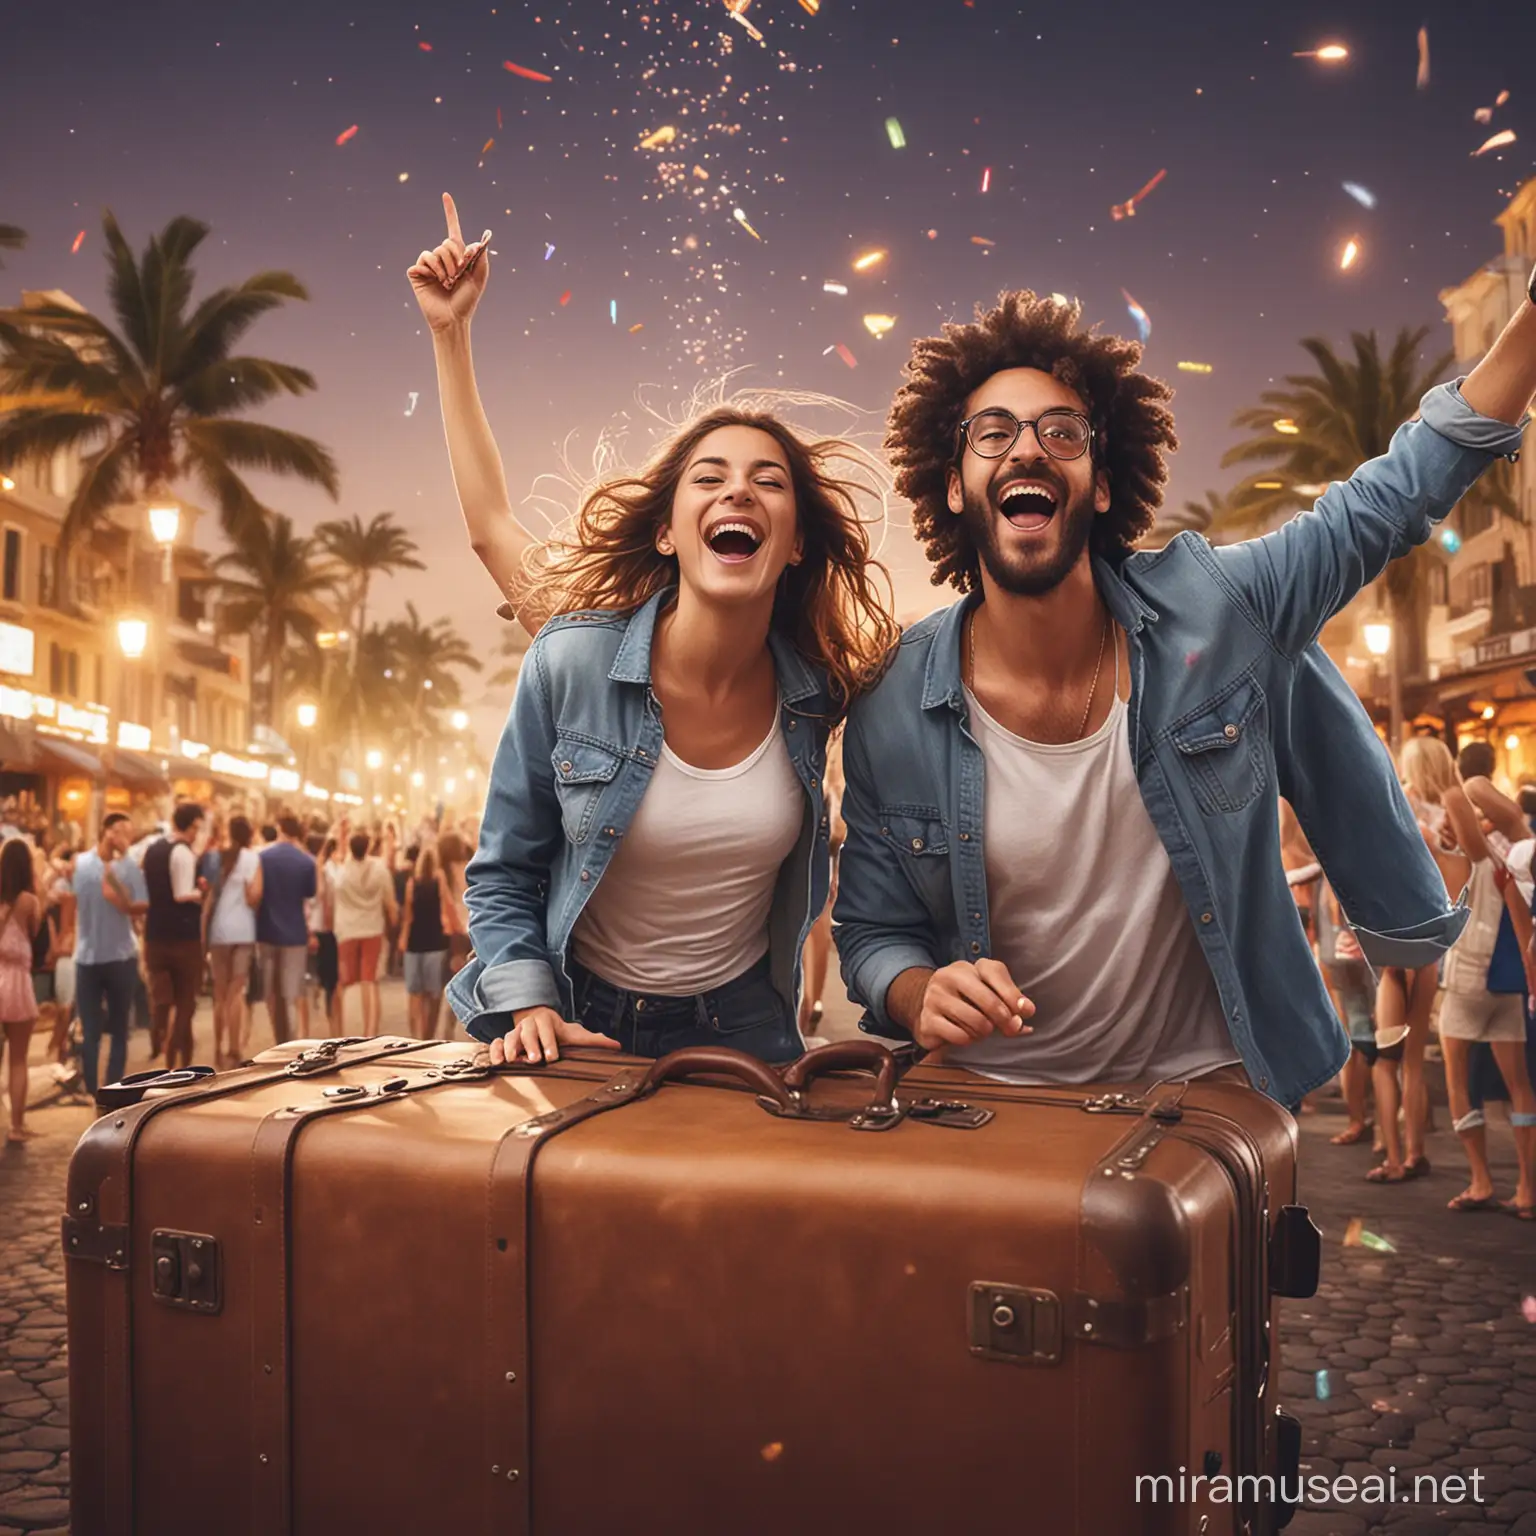 Joyful Travelers Celebrating Together